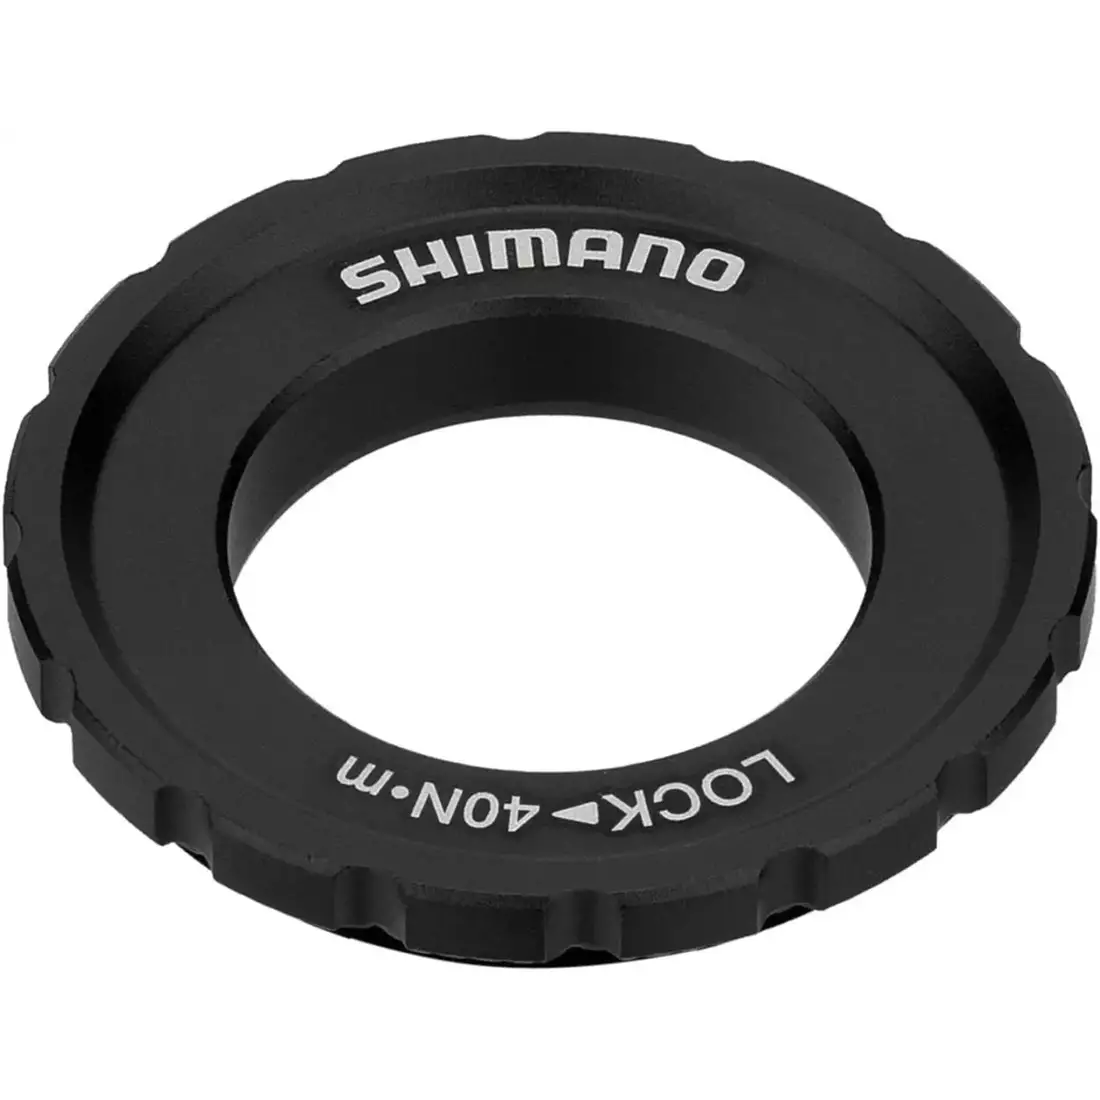 SHIMANO SM-RT64 rowerowa tarcza hamulcowa, 180mm